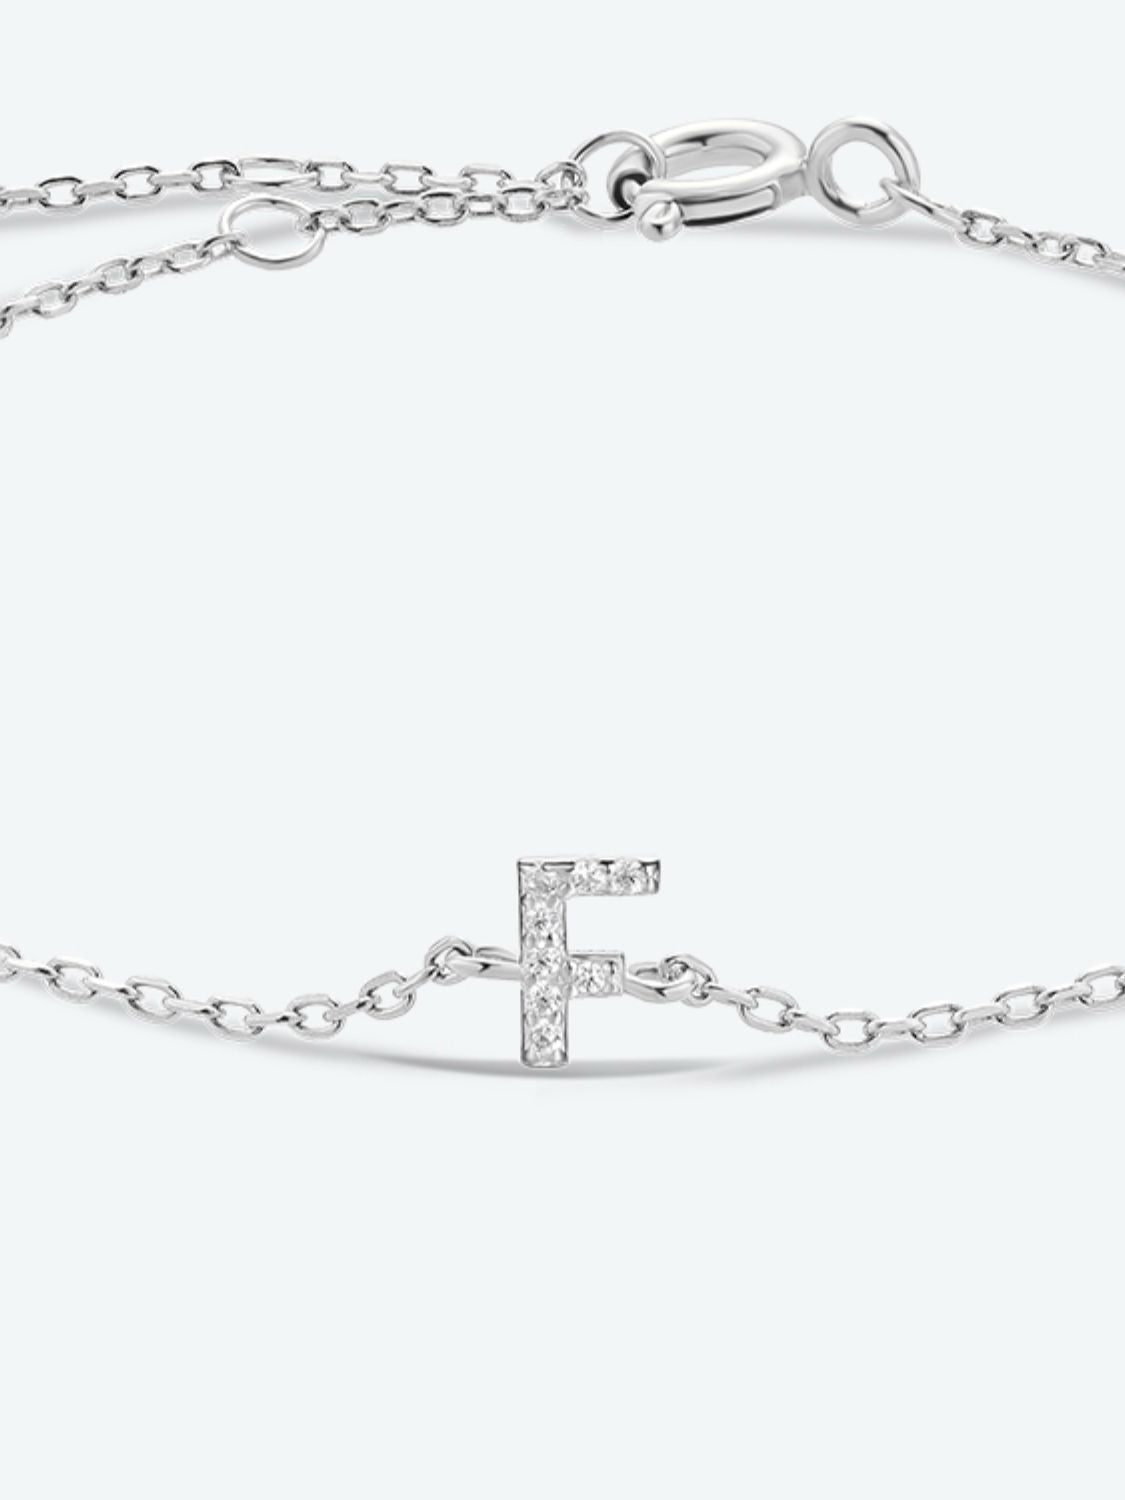 A To F Zircon 925 Sterling Silver Bracelet - Women’s Jewelry - Bracelets - 36 - 2024